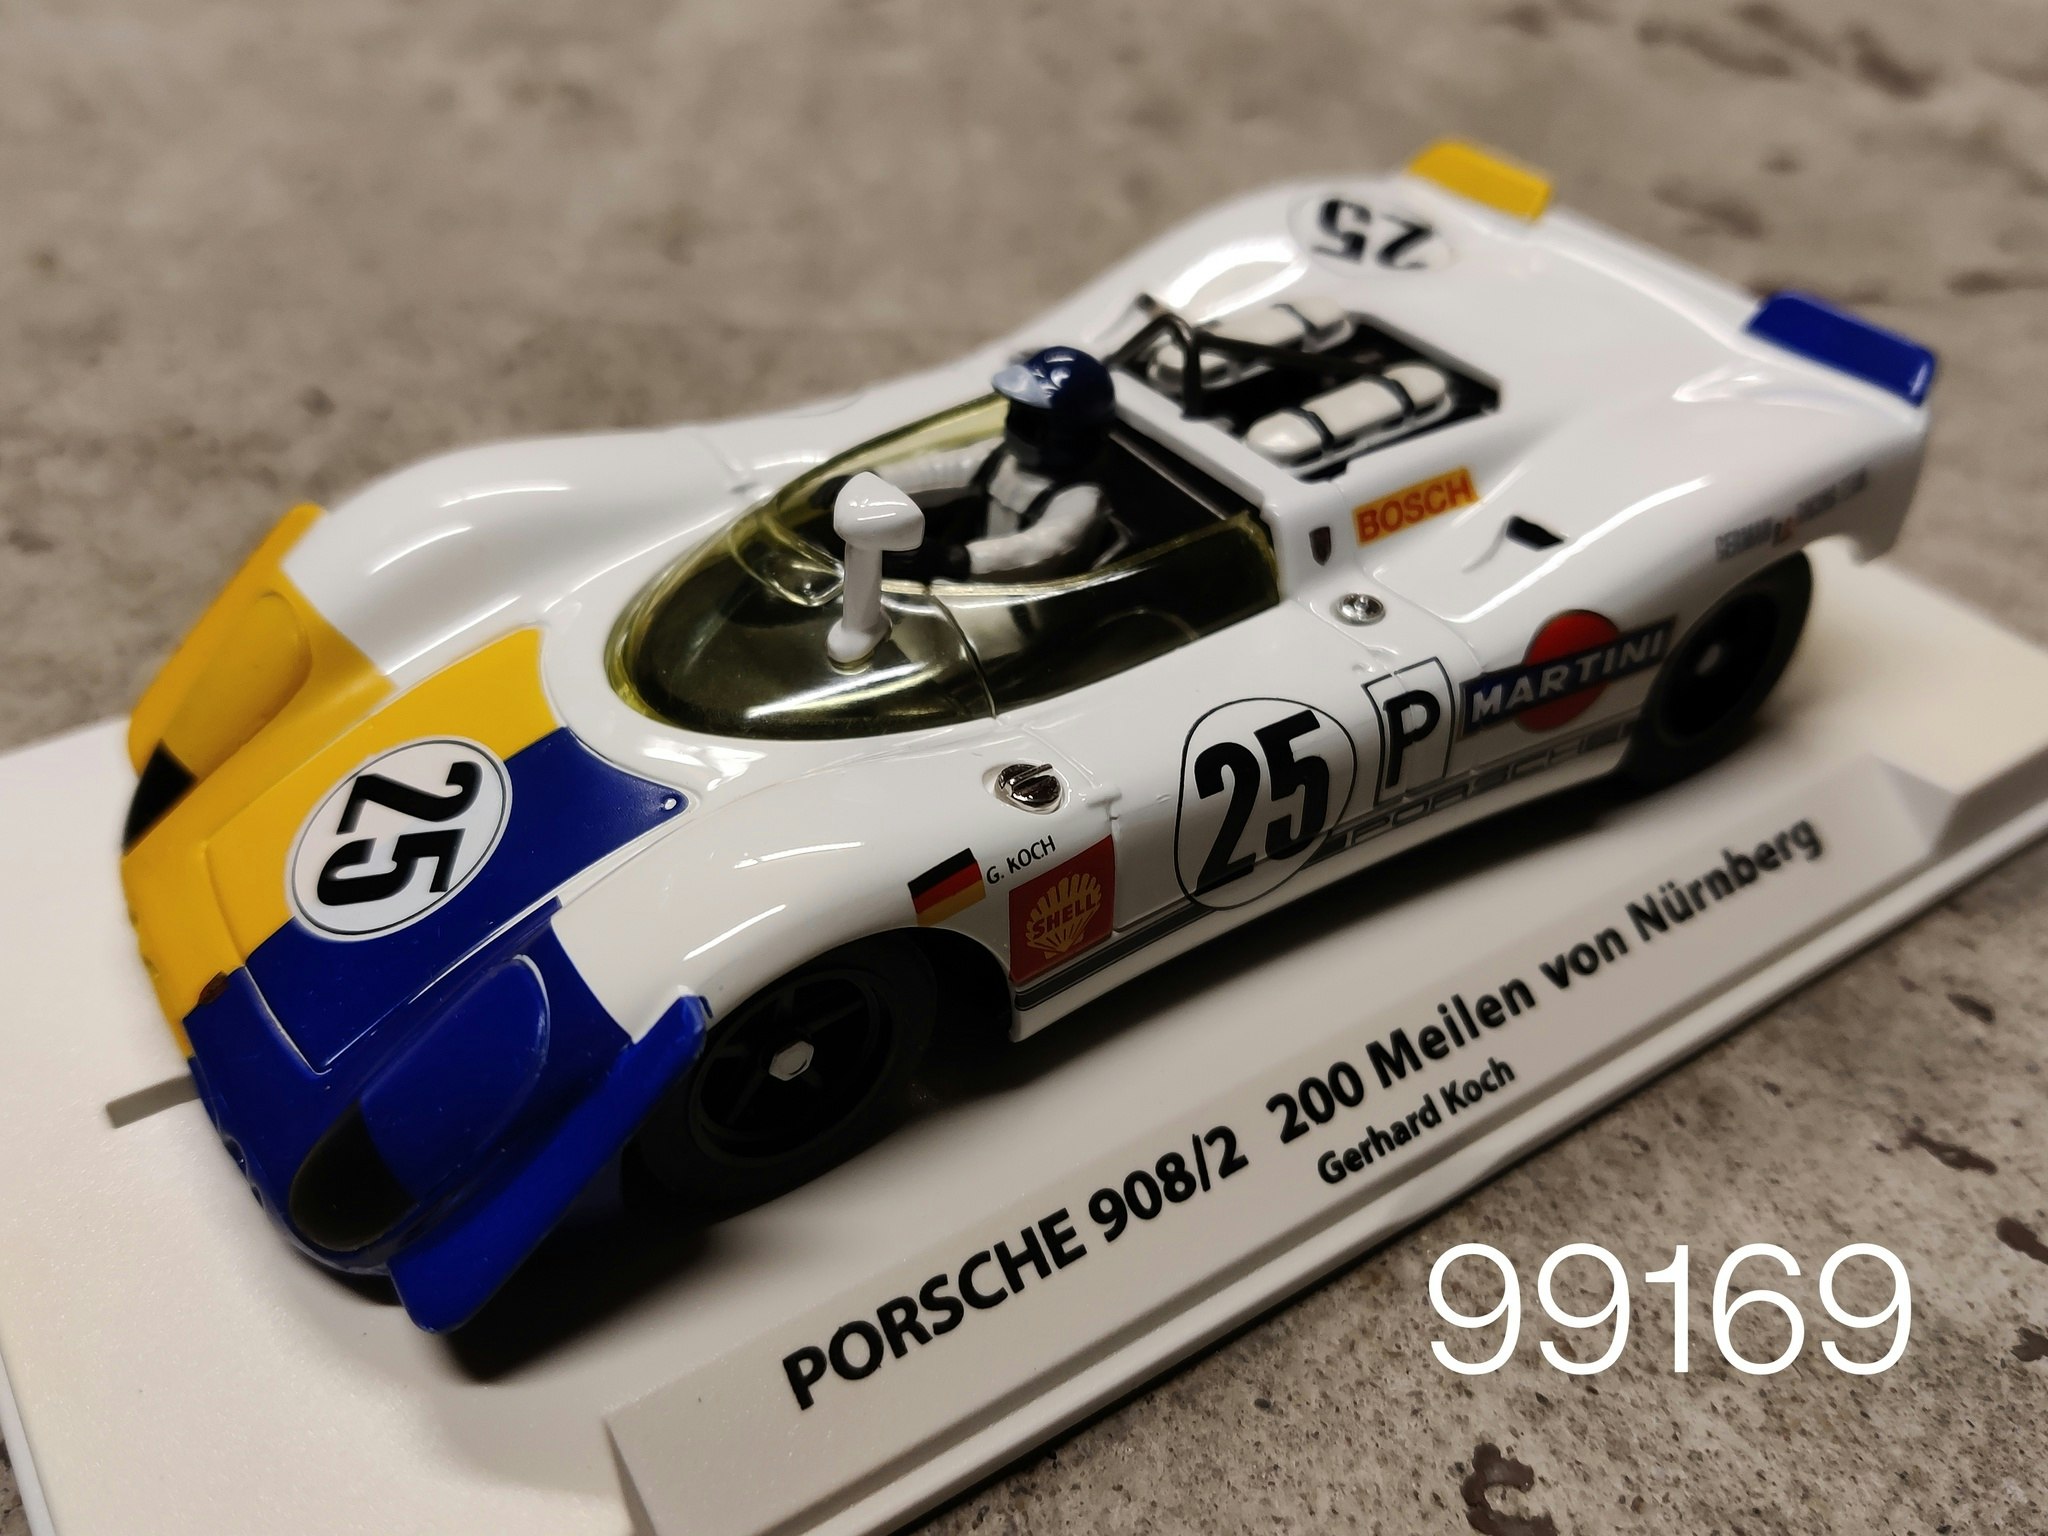 FLY Car Model - Porsche 908/2 - 200 meilen von Nurnberg 1969 - limited edition 500 units